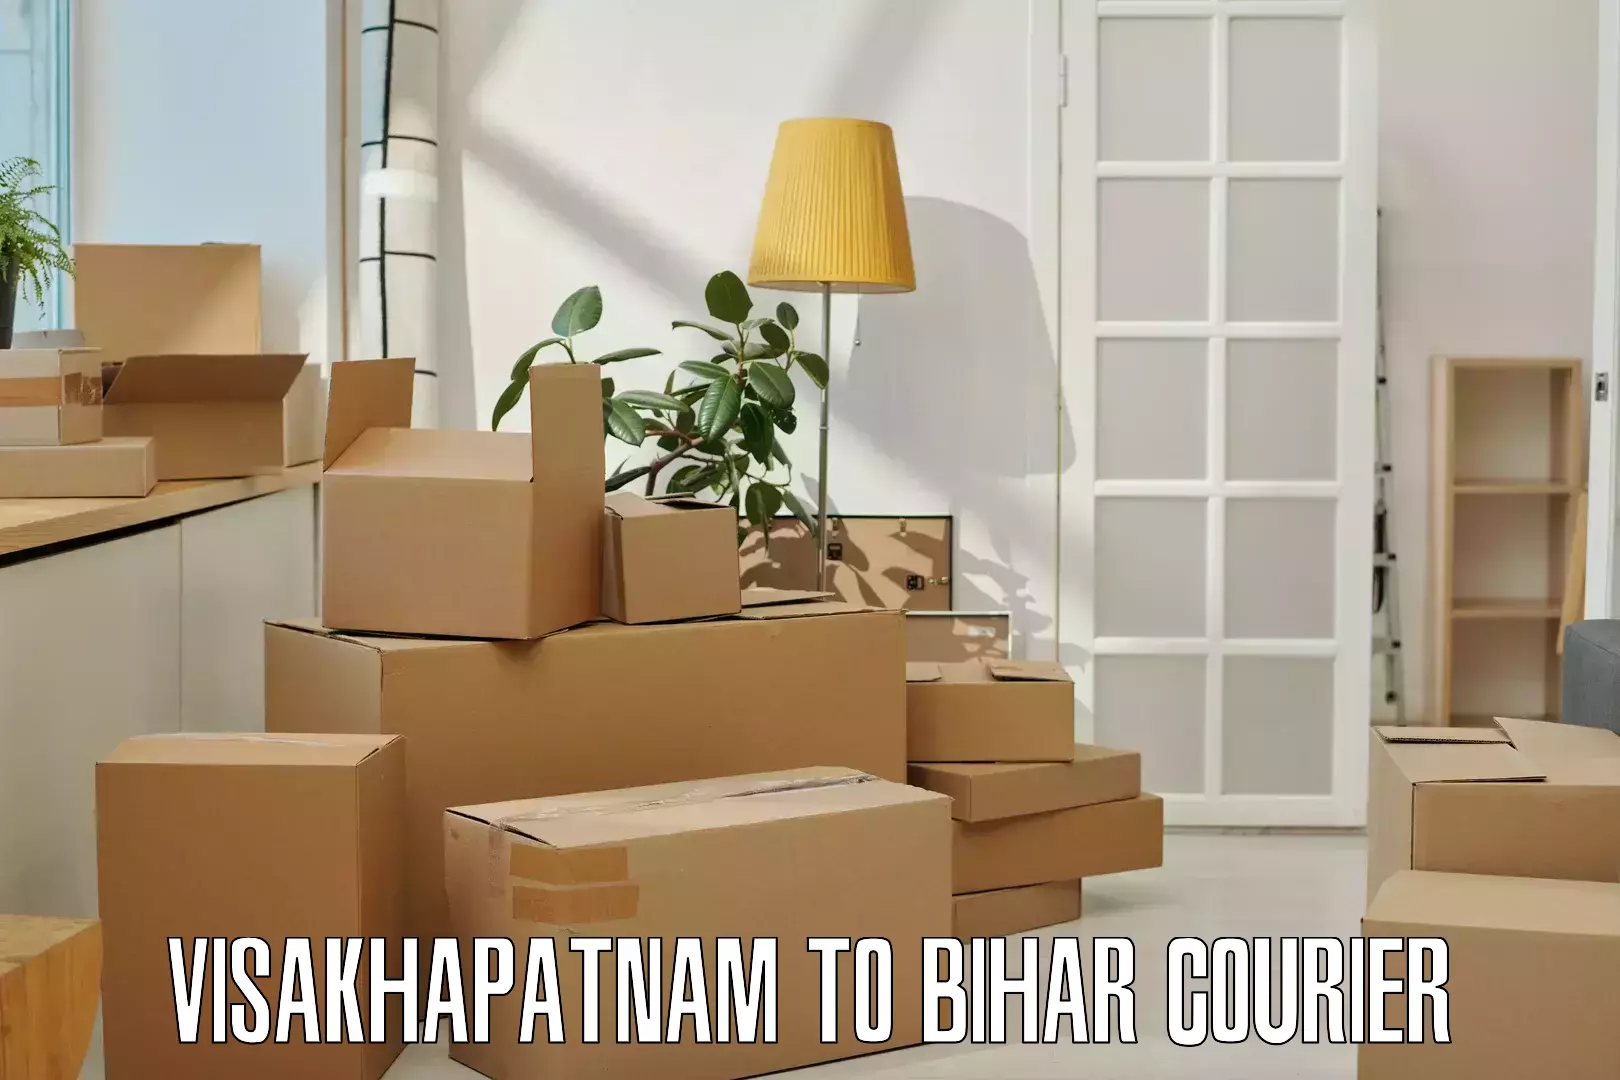 Efficient parcel service Visakhapatnam to Buxar